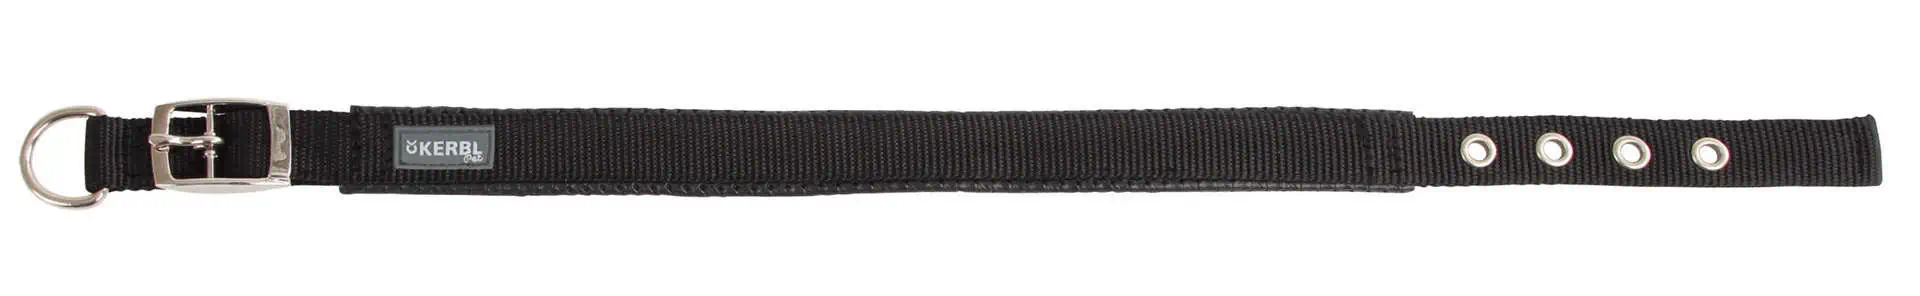 MIAMI PLUS Nylonhalsband mit Softeinlage 33-39cm